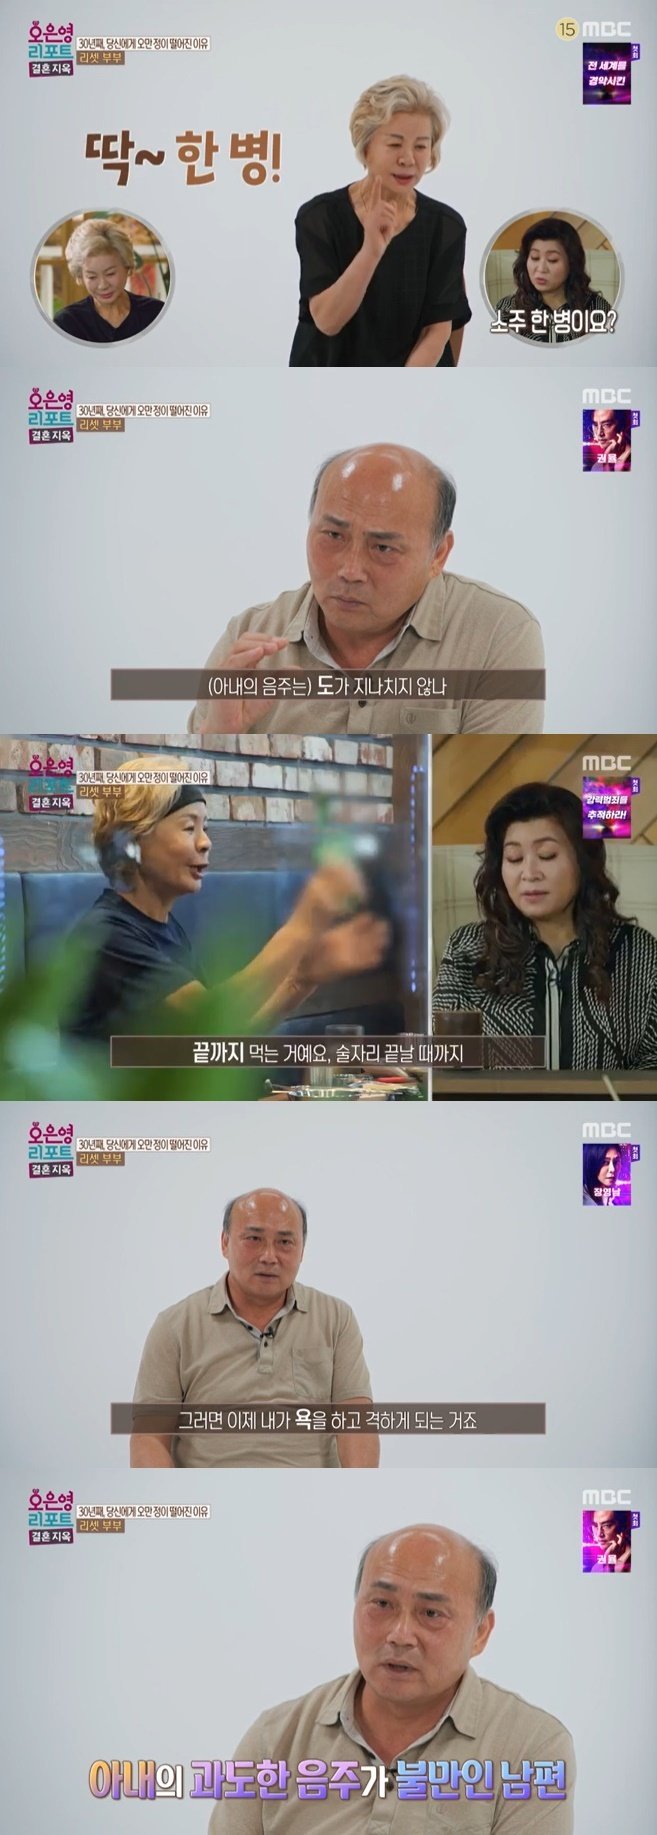 MBC '결혼 지옥' 캡처